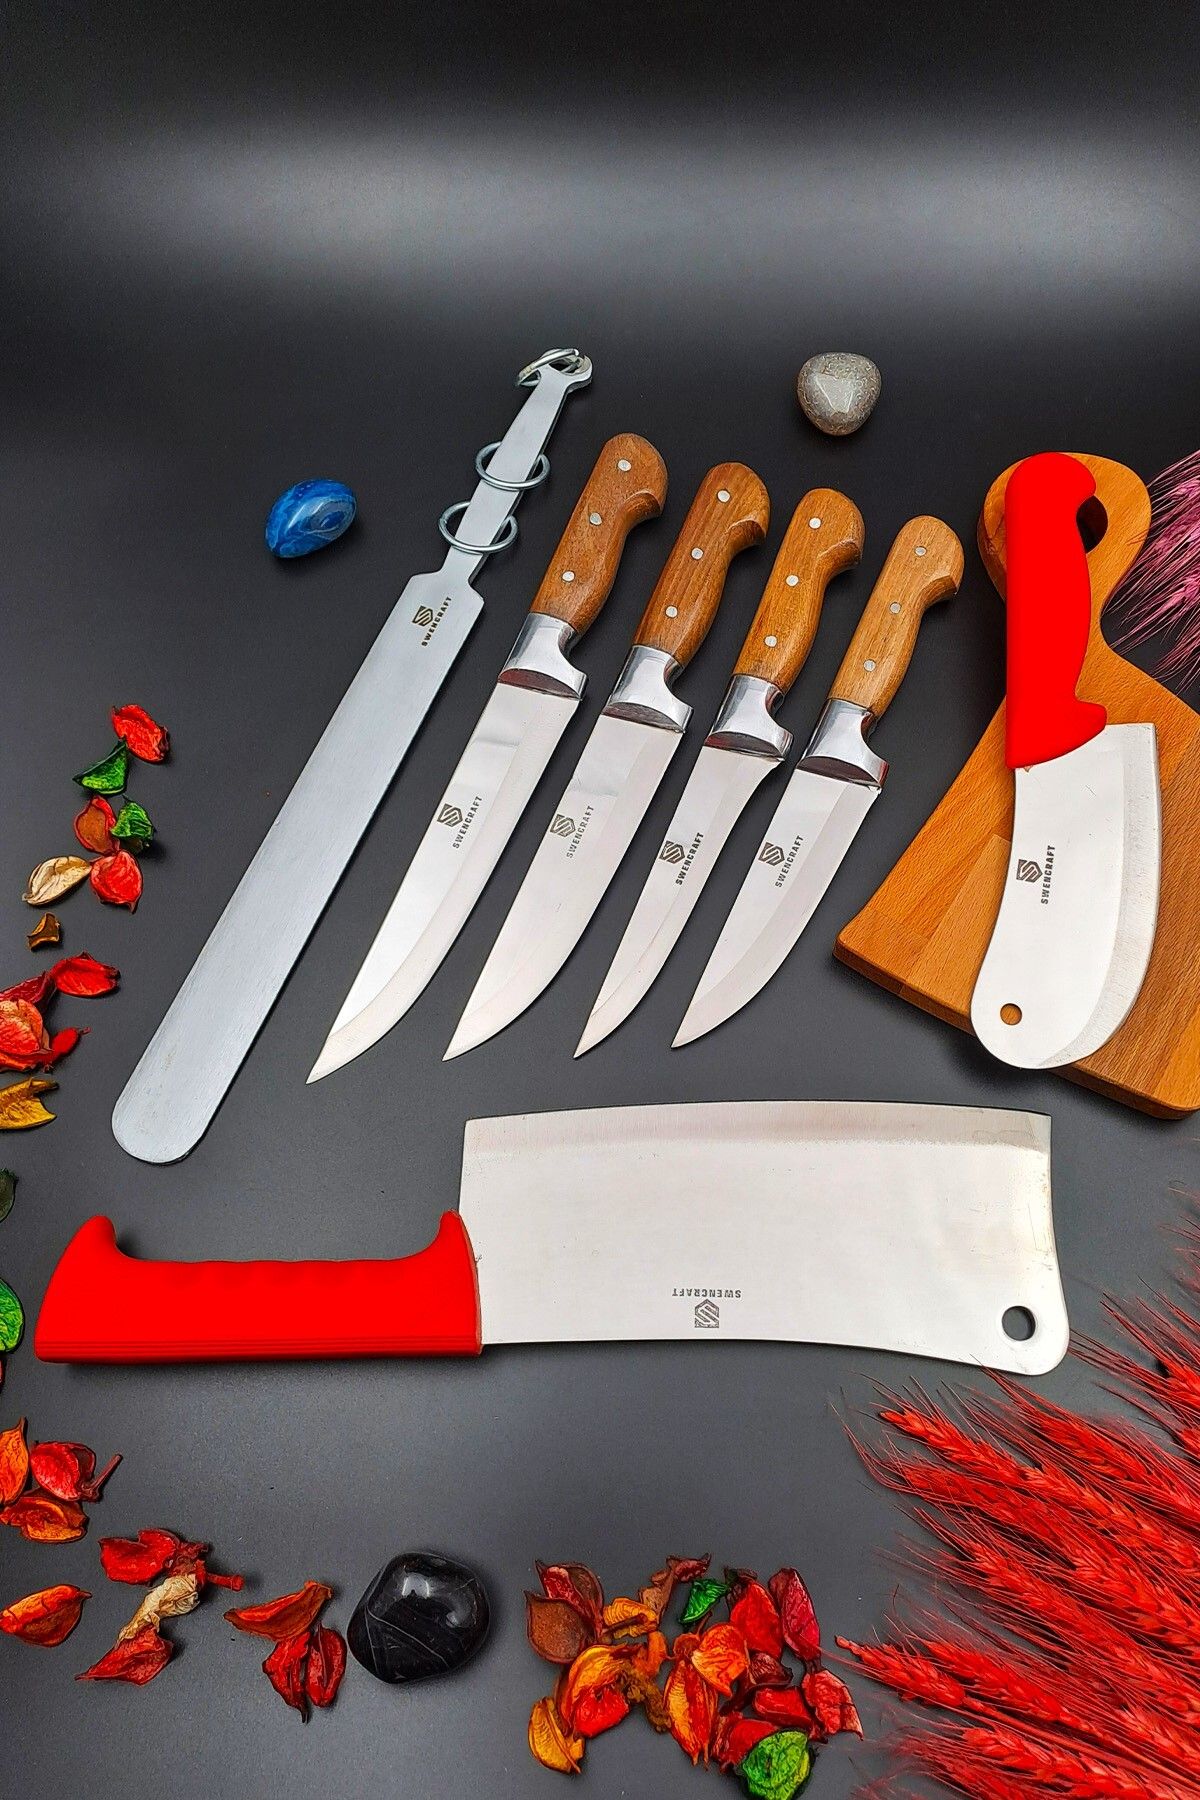 SWENCRAFT Mutfak Kasap Kurban Sürmene Yatağan Soğan Börek Satır Bıçak Seti Ve Lüks Masat 7 Parça Çeyiz Seti